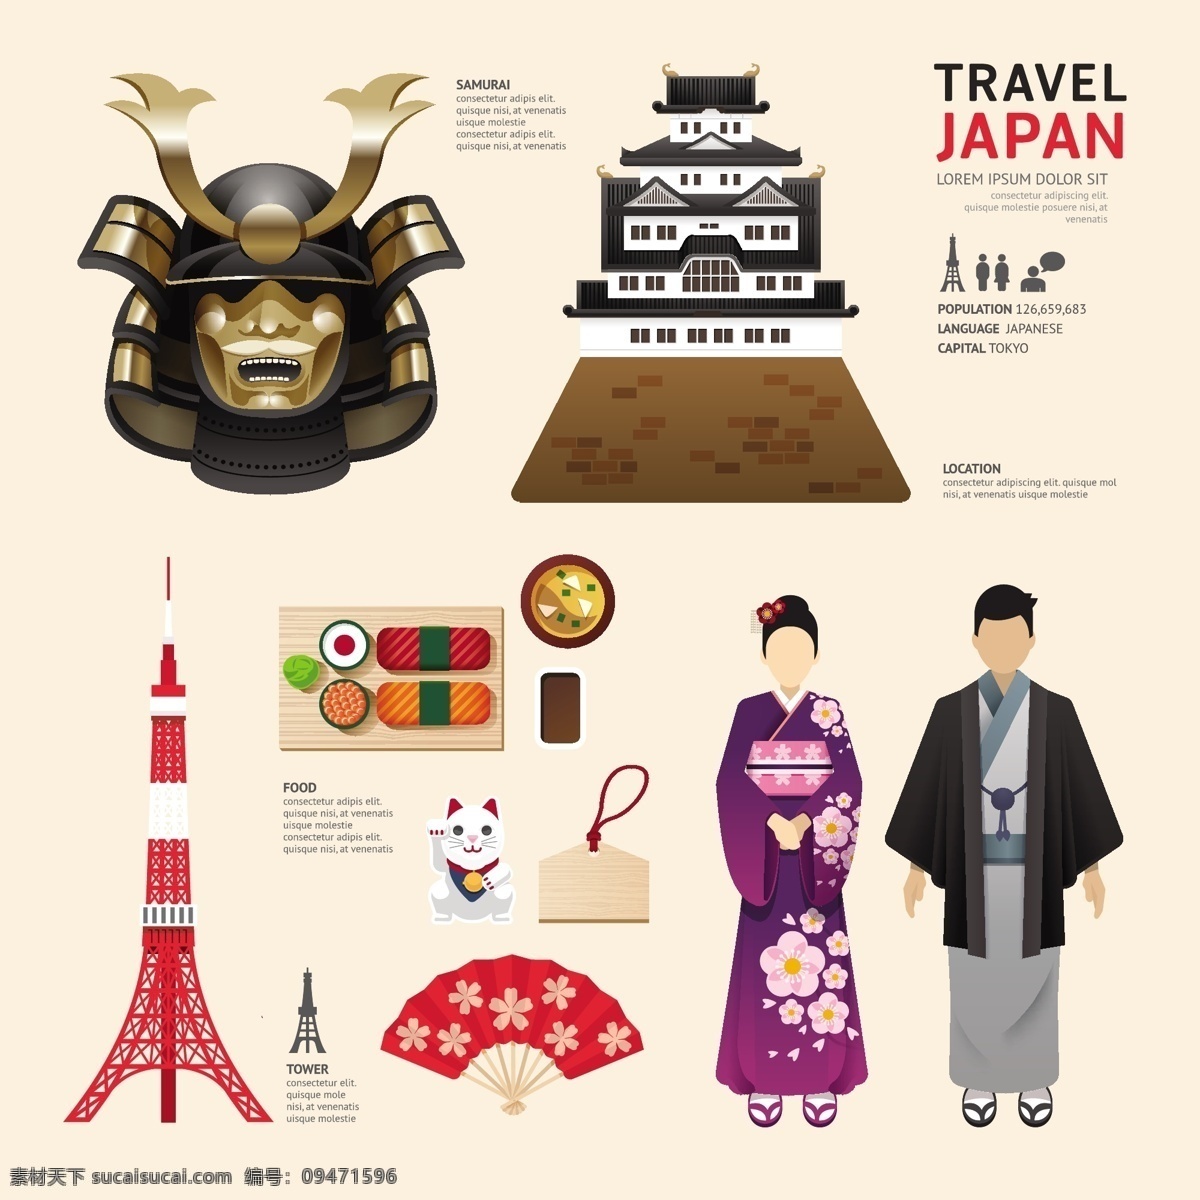 日本旅游 创意旅游 旅游 和服 寿司 具足 日本 日本风景 日本游 日本标志建筑 日本著名建筑 樱花 旅游素材